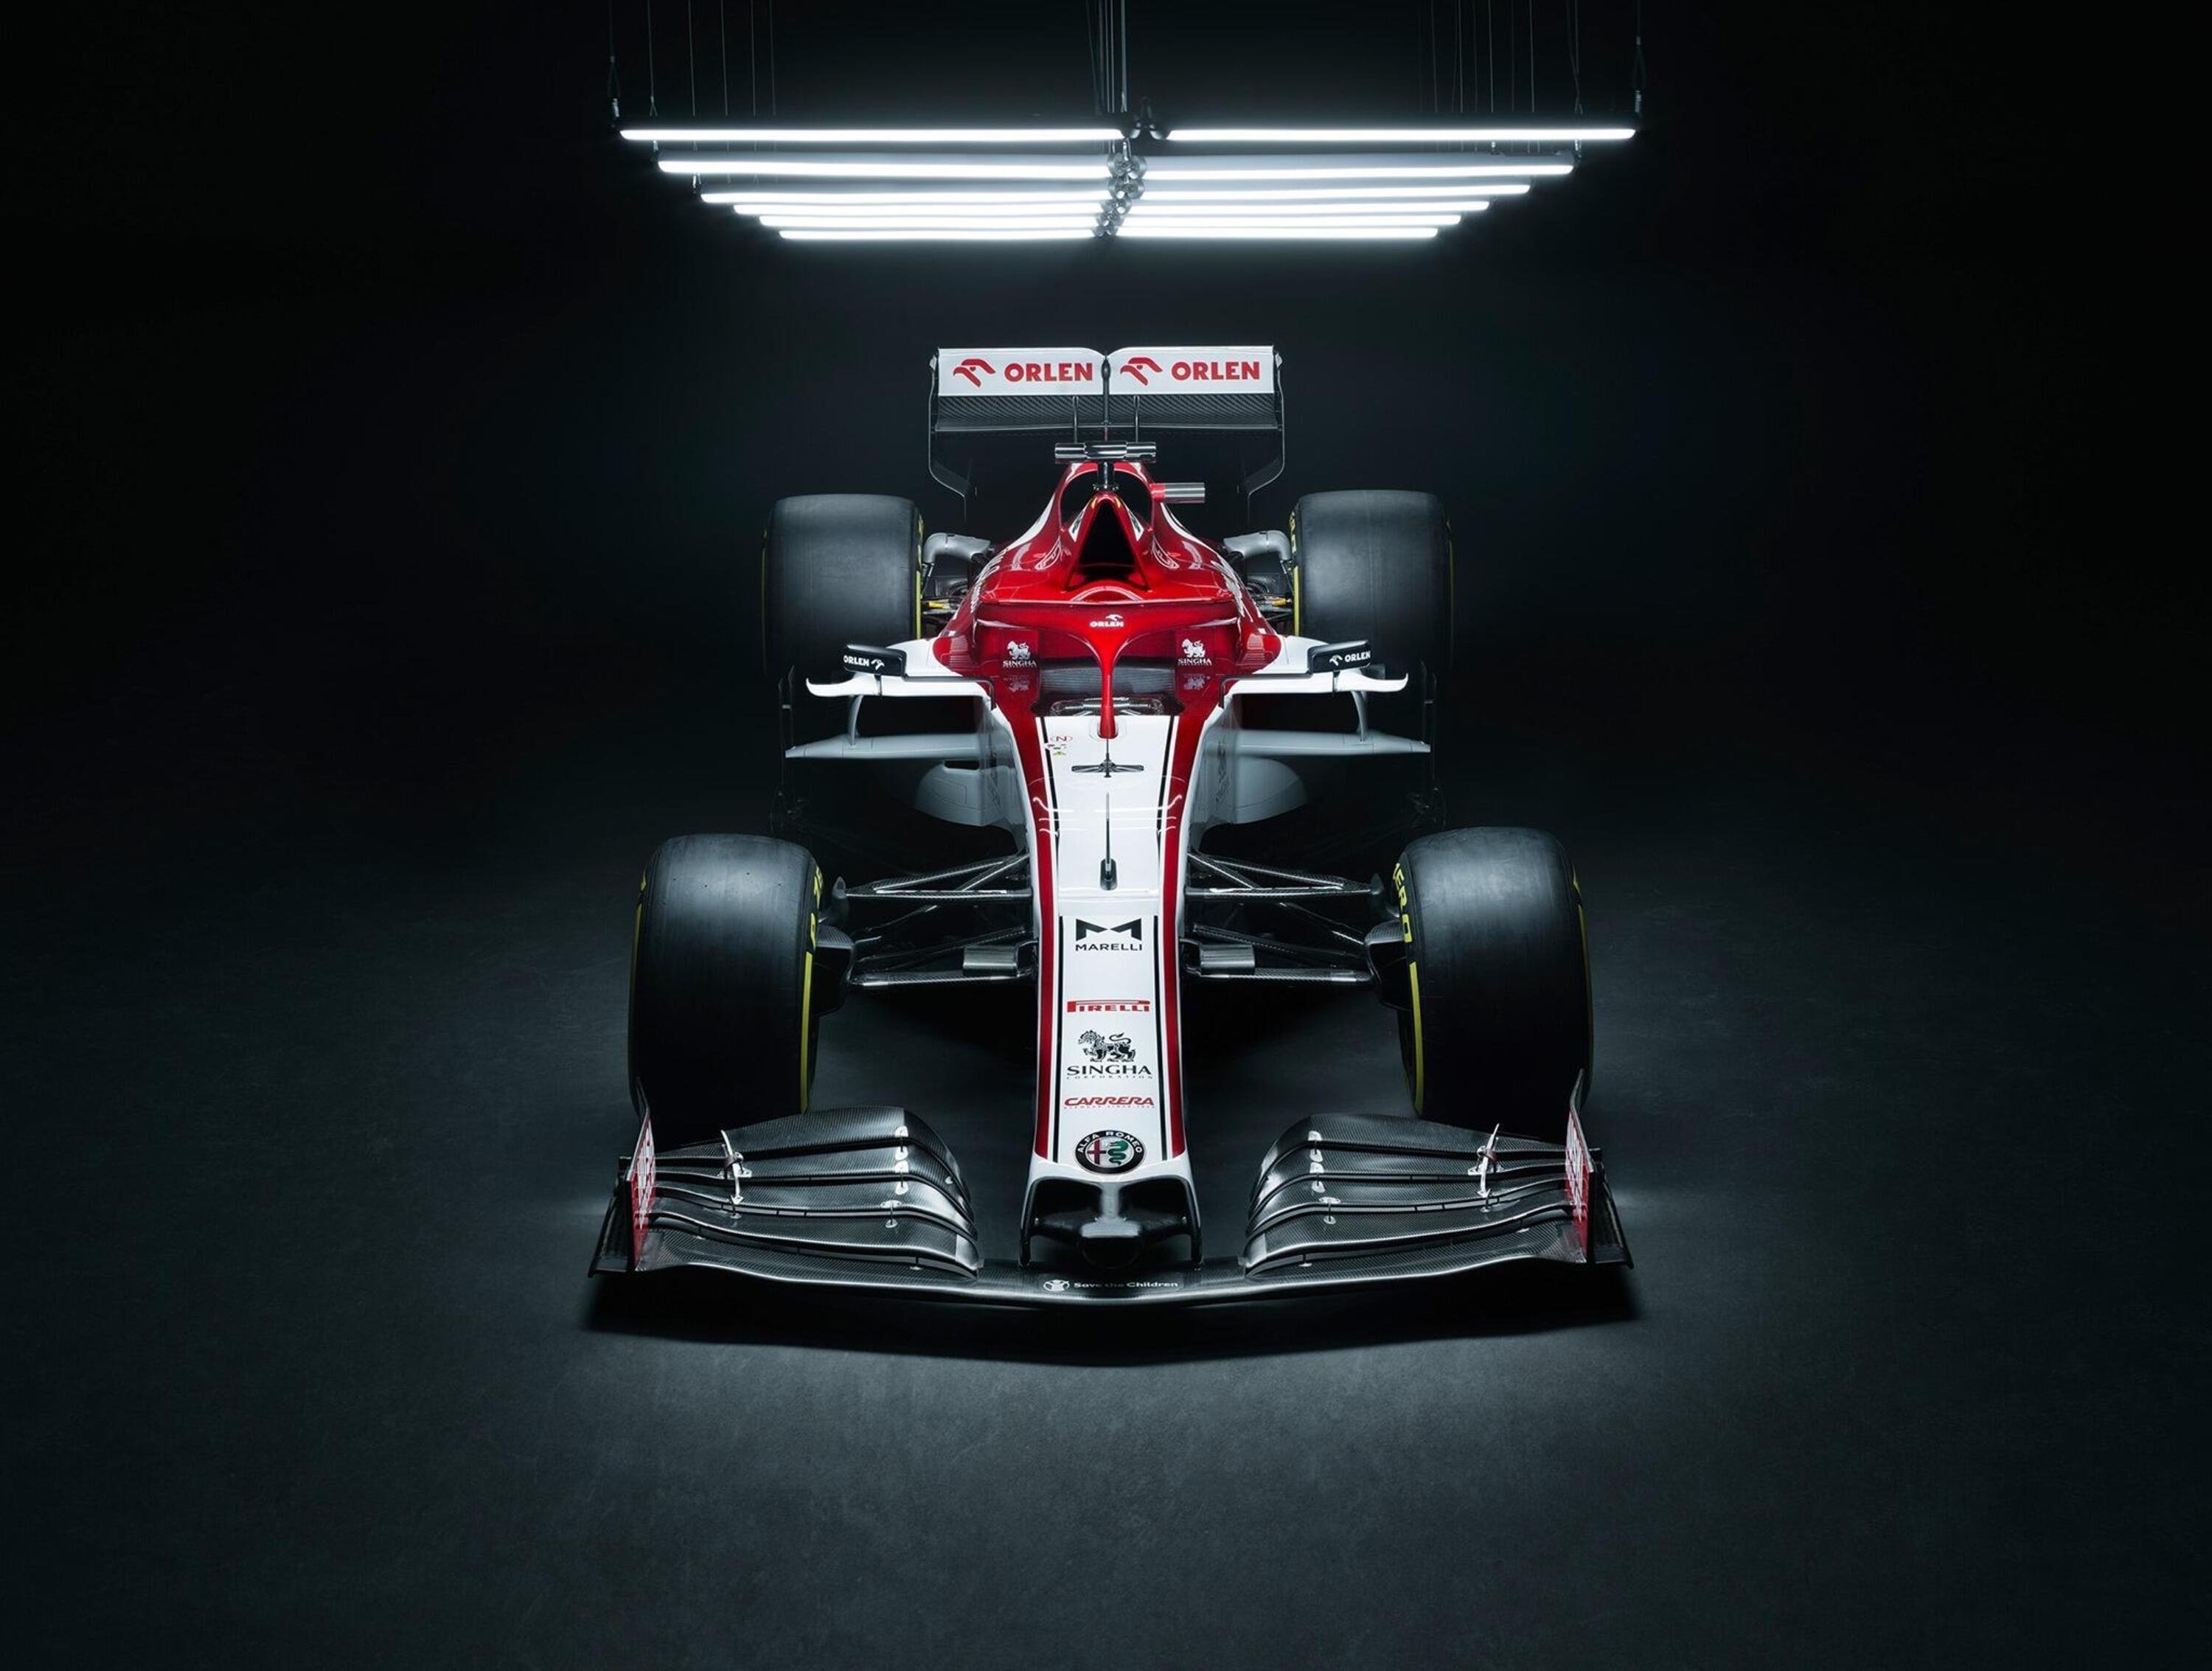 Formula 1 2020: Alfa Romeo, tolti i veli alla C39